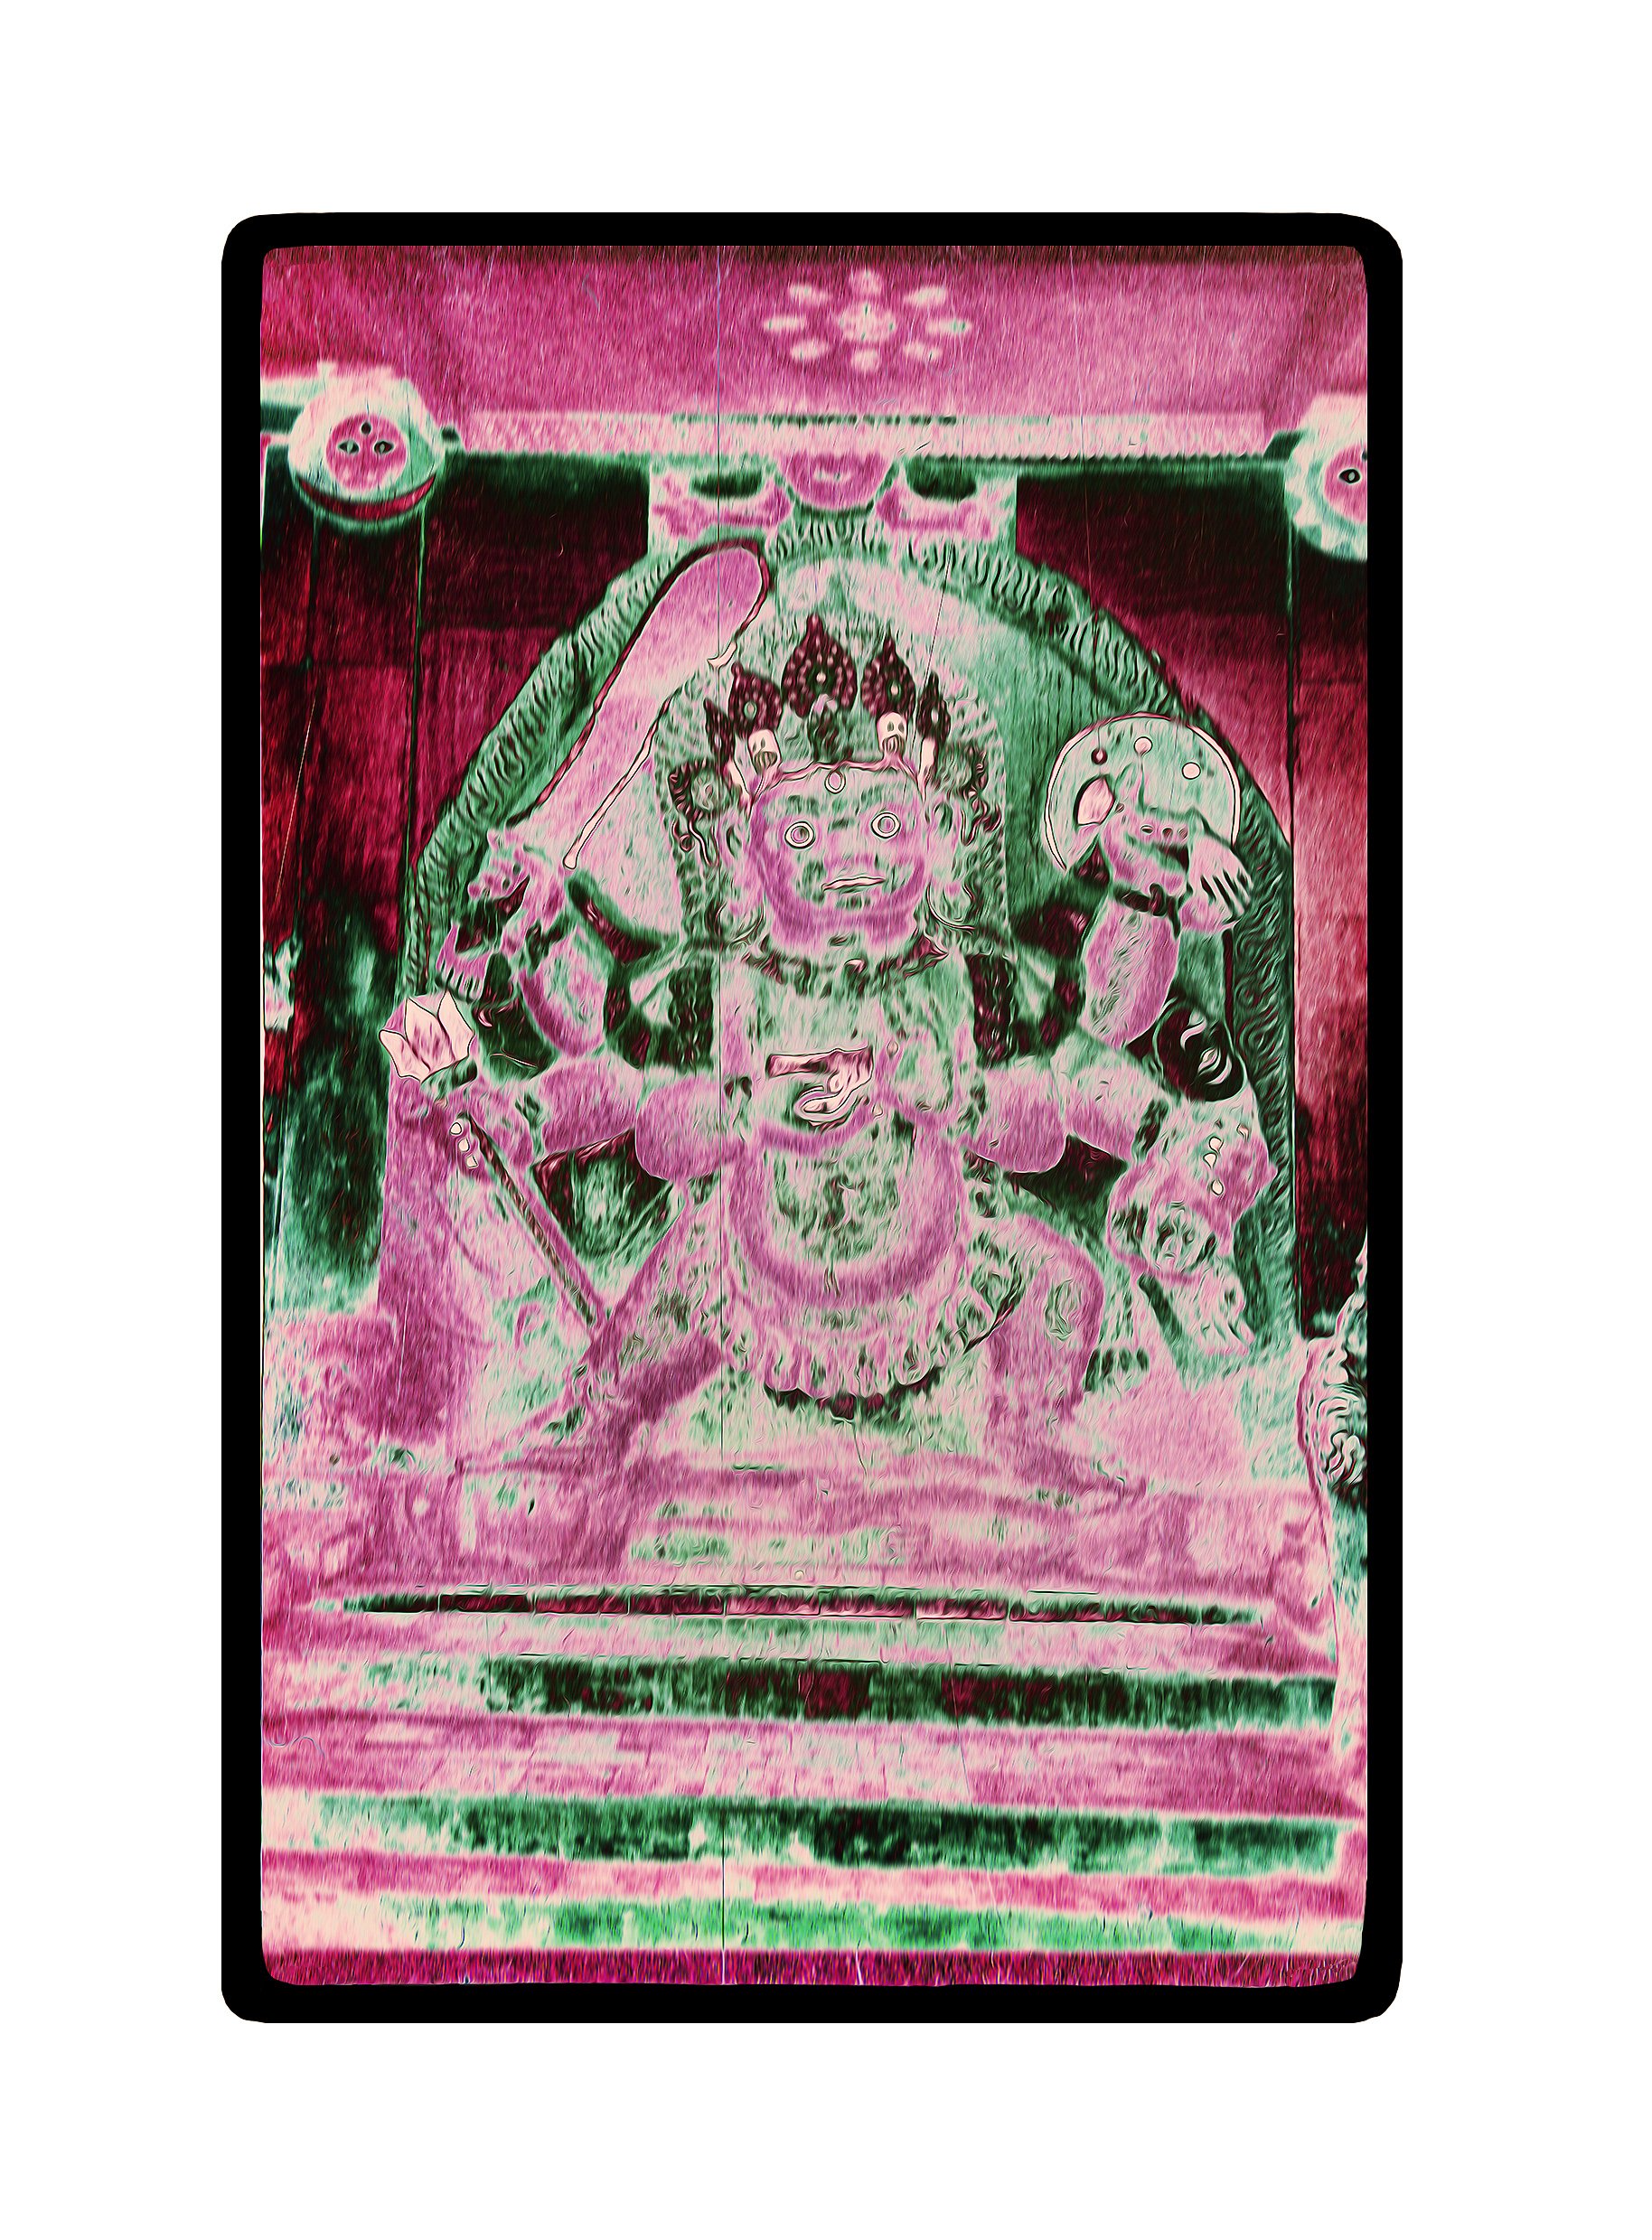 kali bairav kathmandu on white frame.jpg